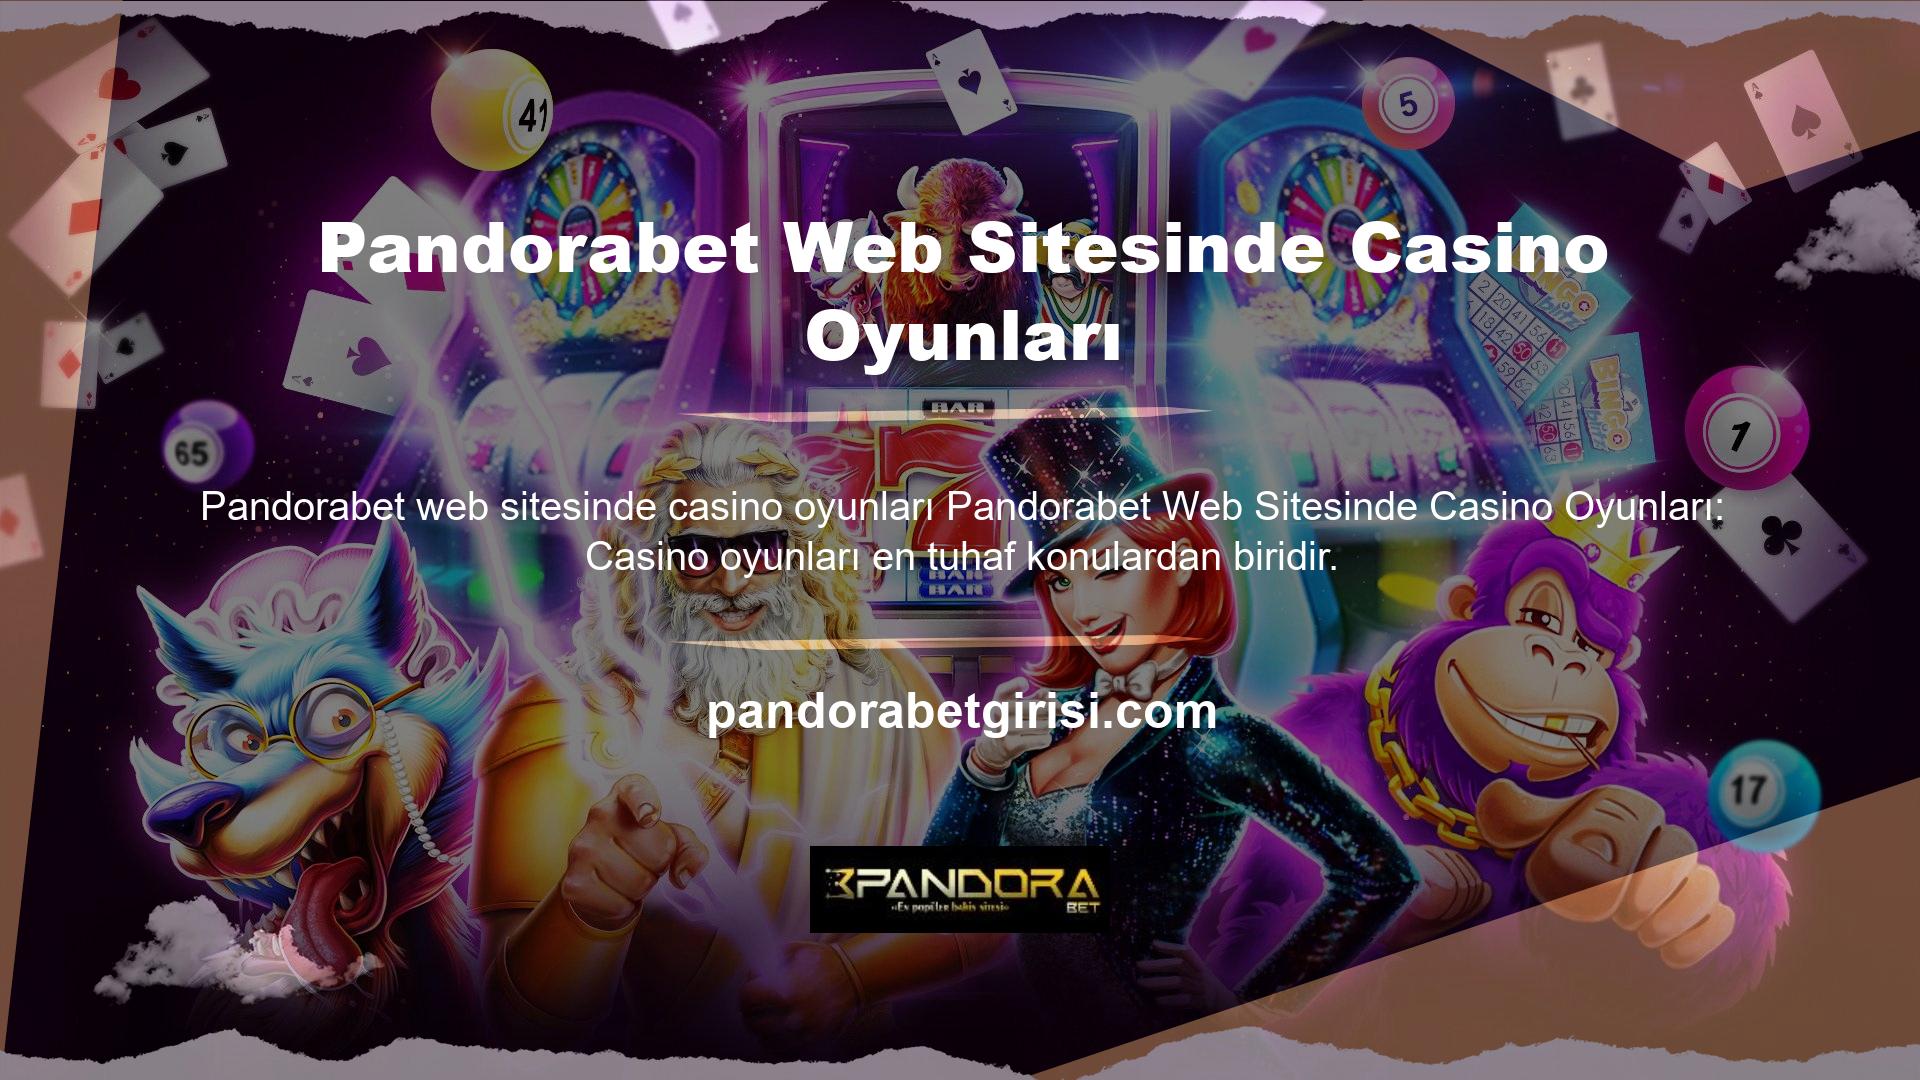 Bugün bu web sitesinin casino hizmetleri hakkında önemli bilgileri detaylandıracağız